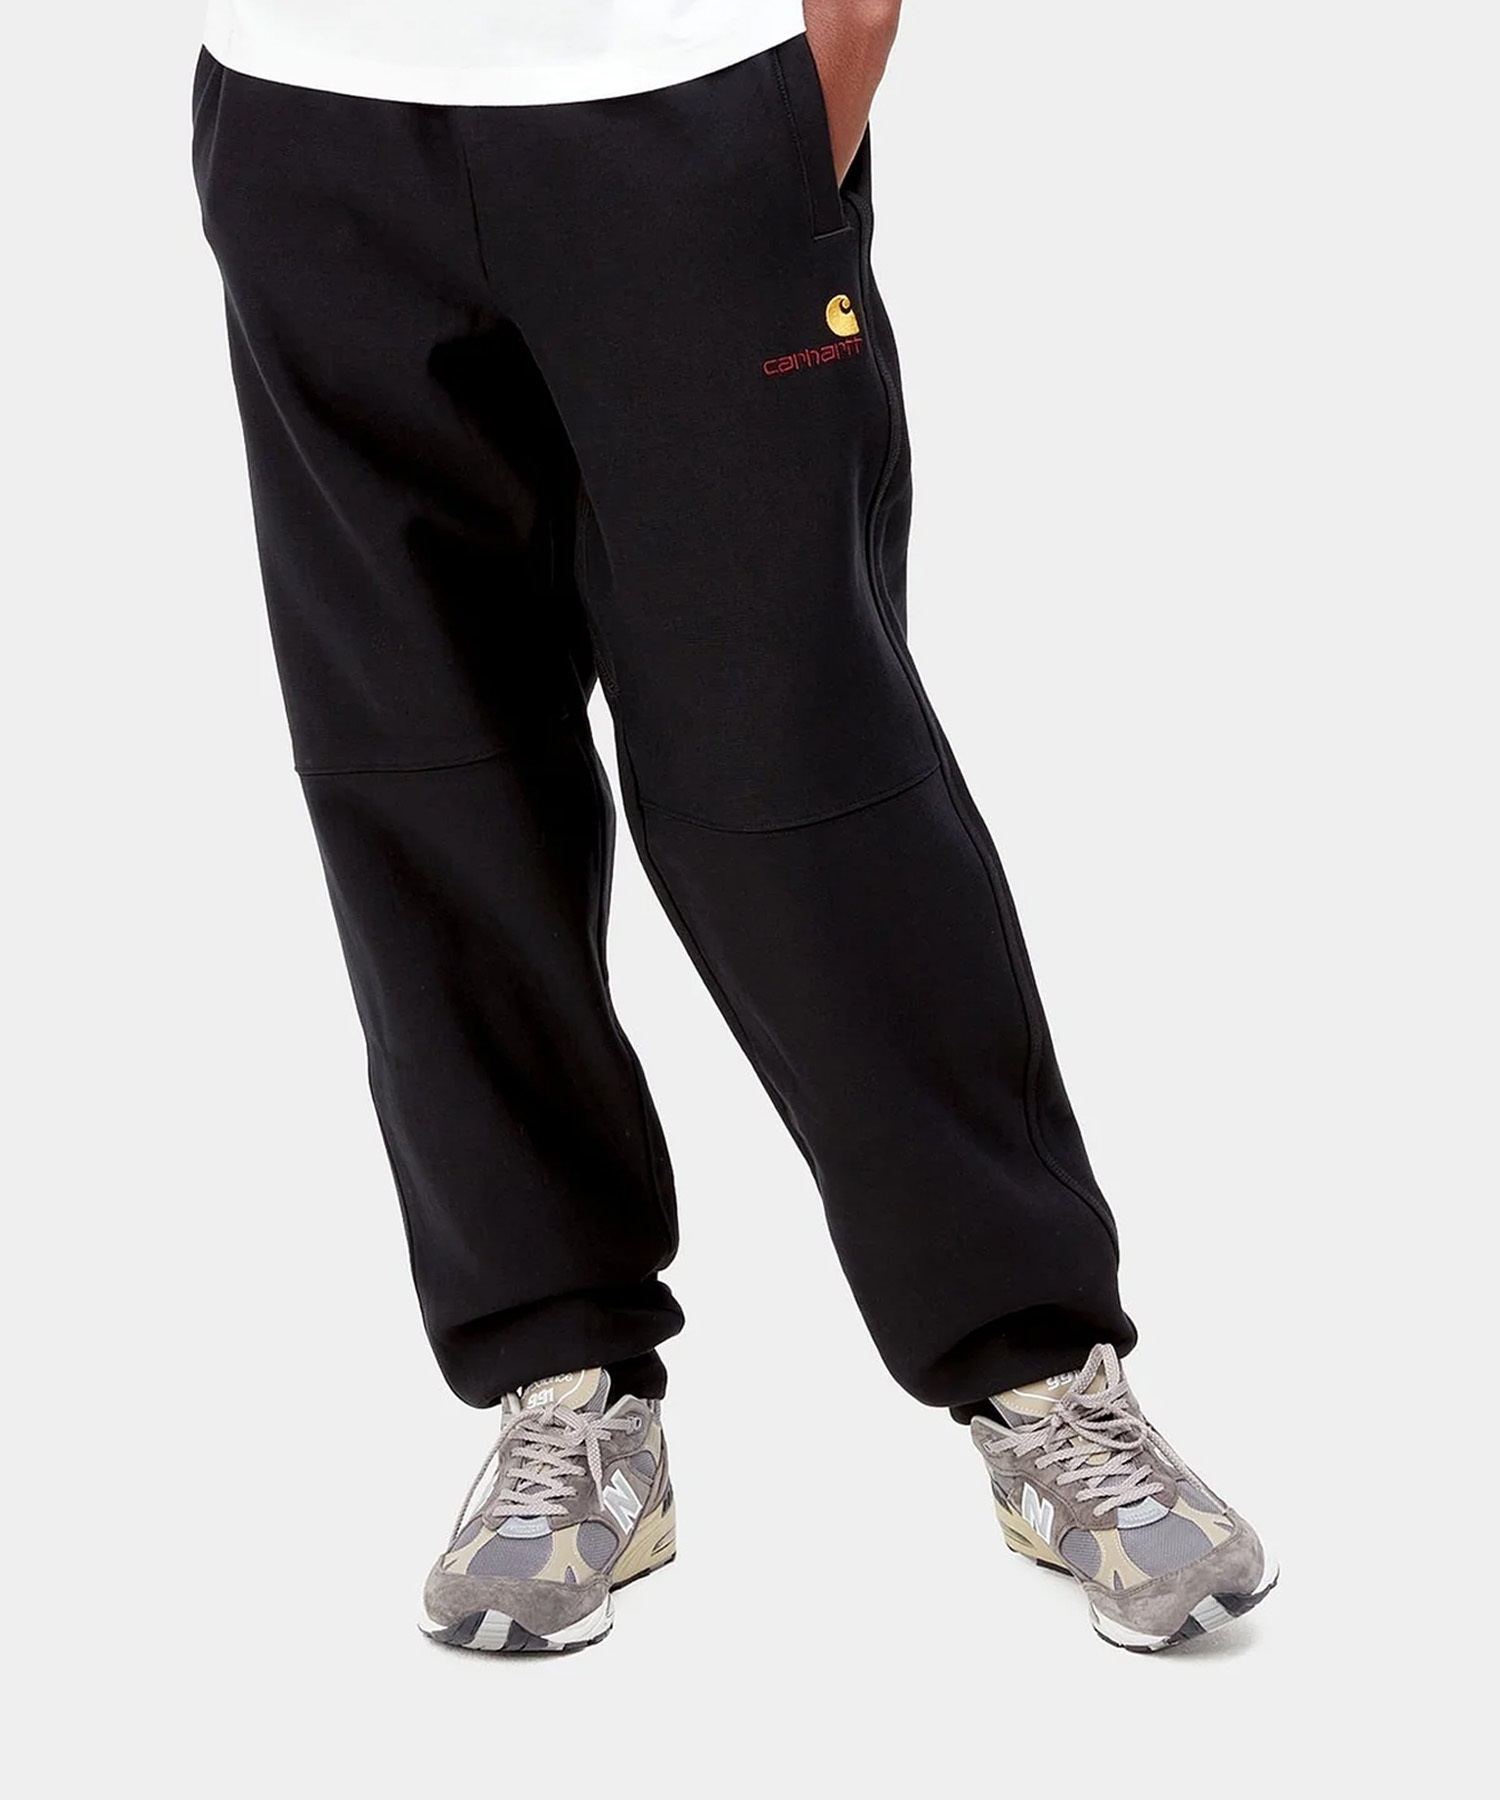 【マトメガイ対象】Carhartt/カーハート アメリカンスプリクト ジョギングパンツ メンズ スウェット 裏起毛 ブラック I027042(BLACK-S)